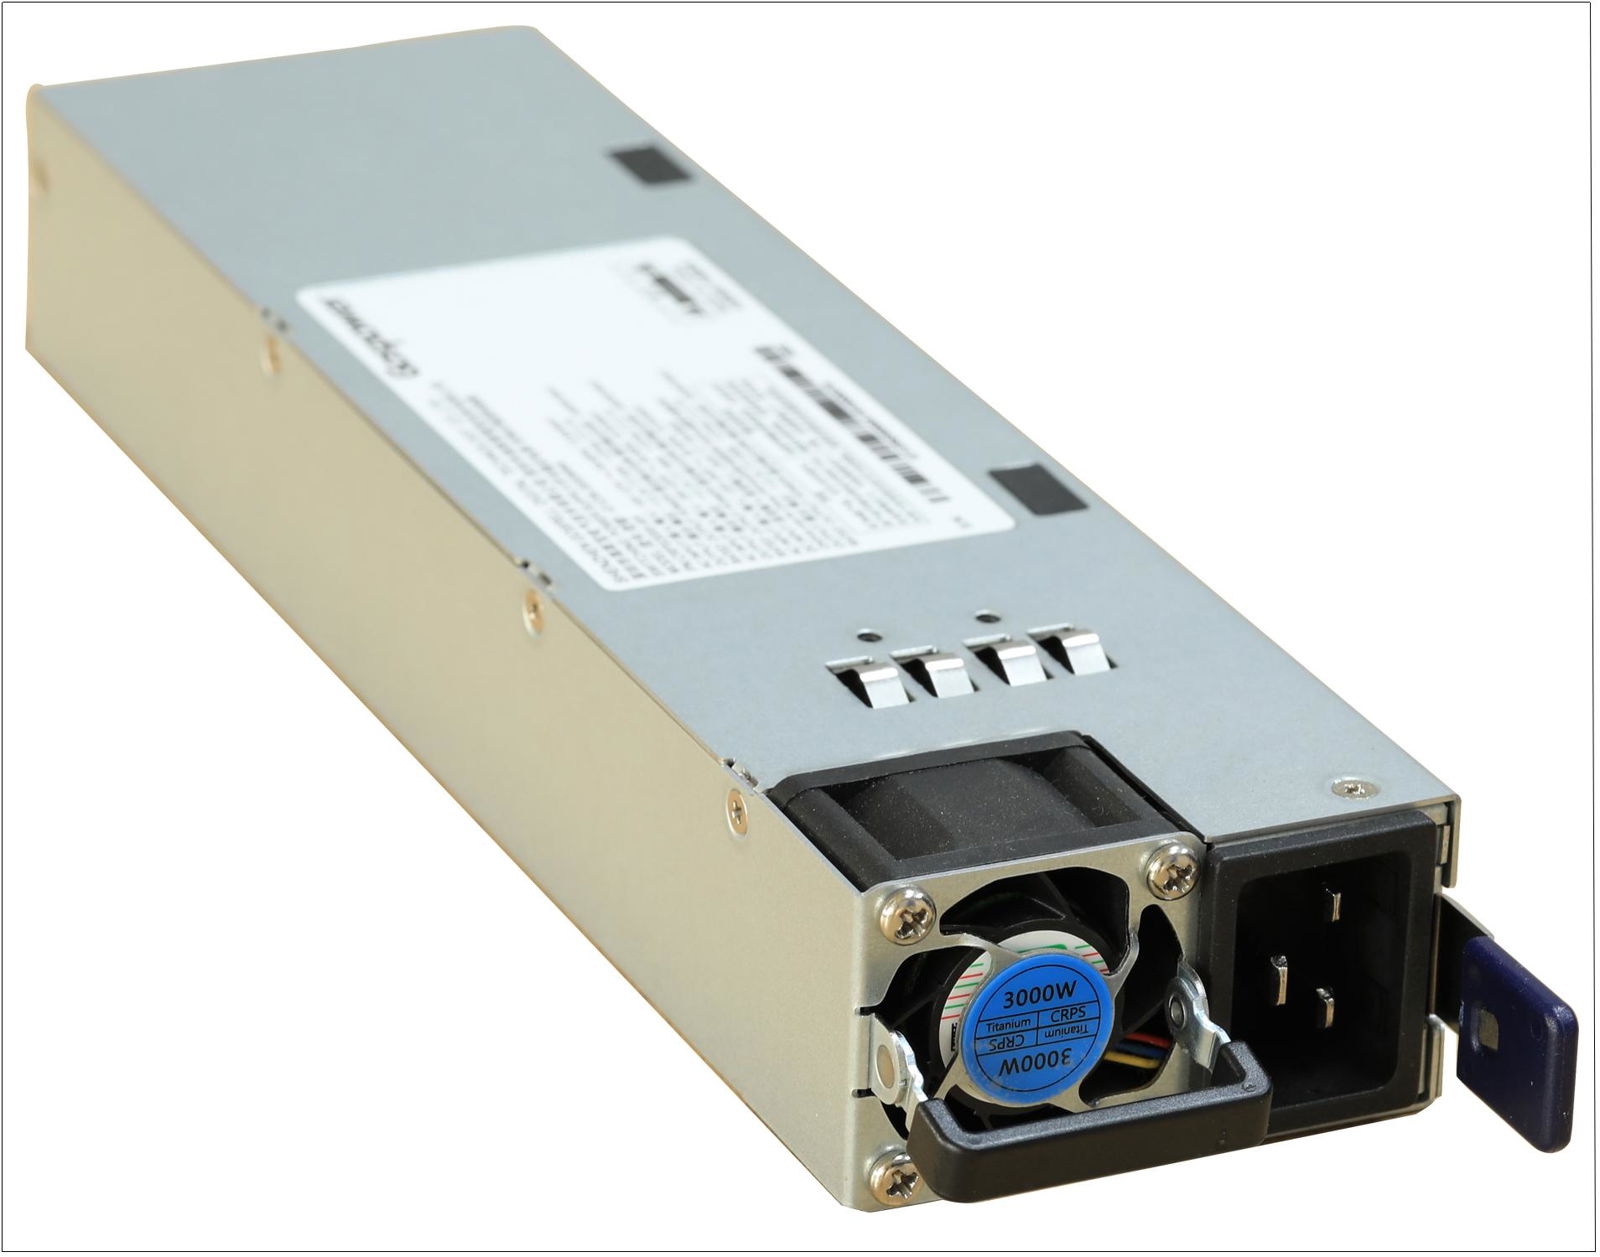 Hot Swap Titanium AC/DC CRPS Redundant Power supply for server 